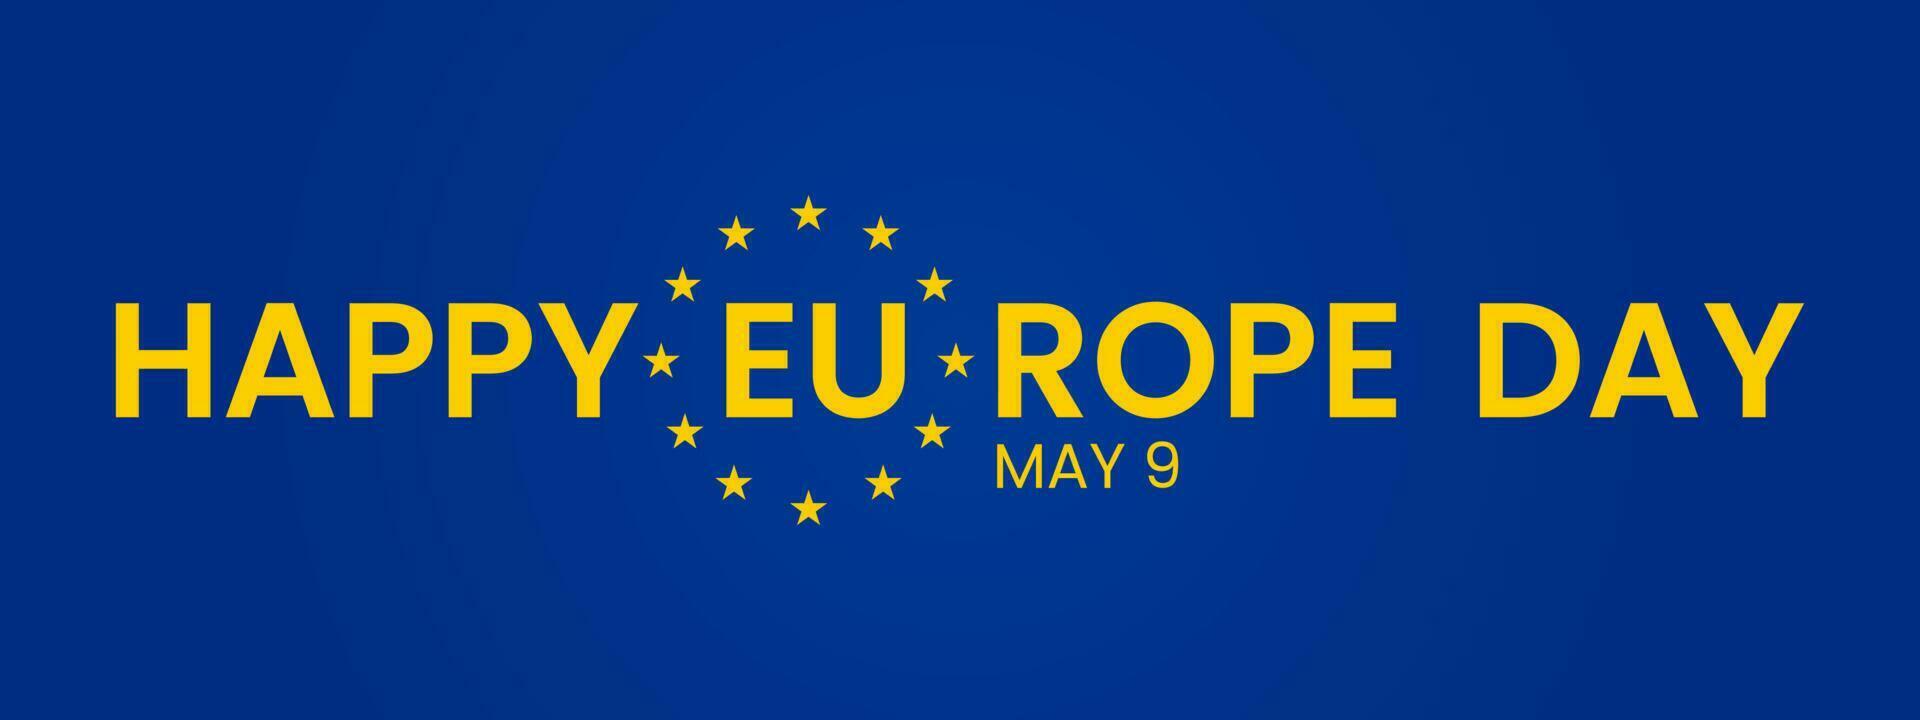 Lycklig Europa dag av europeisk union. Maj 9. blå flagga, gul stjärnor, olika människor innehav händer tillsammans, annorlunda kulturell jämlikhet, vektor illustration.